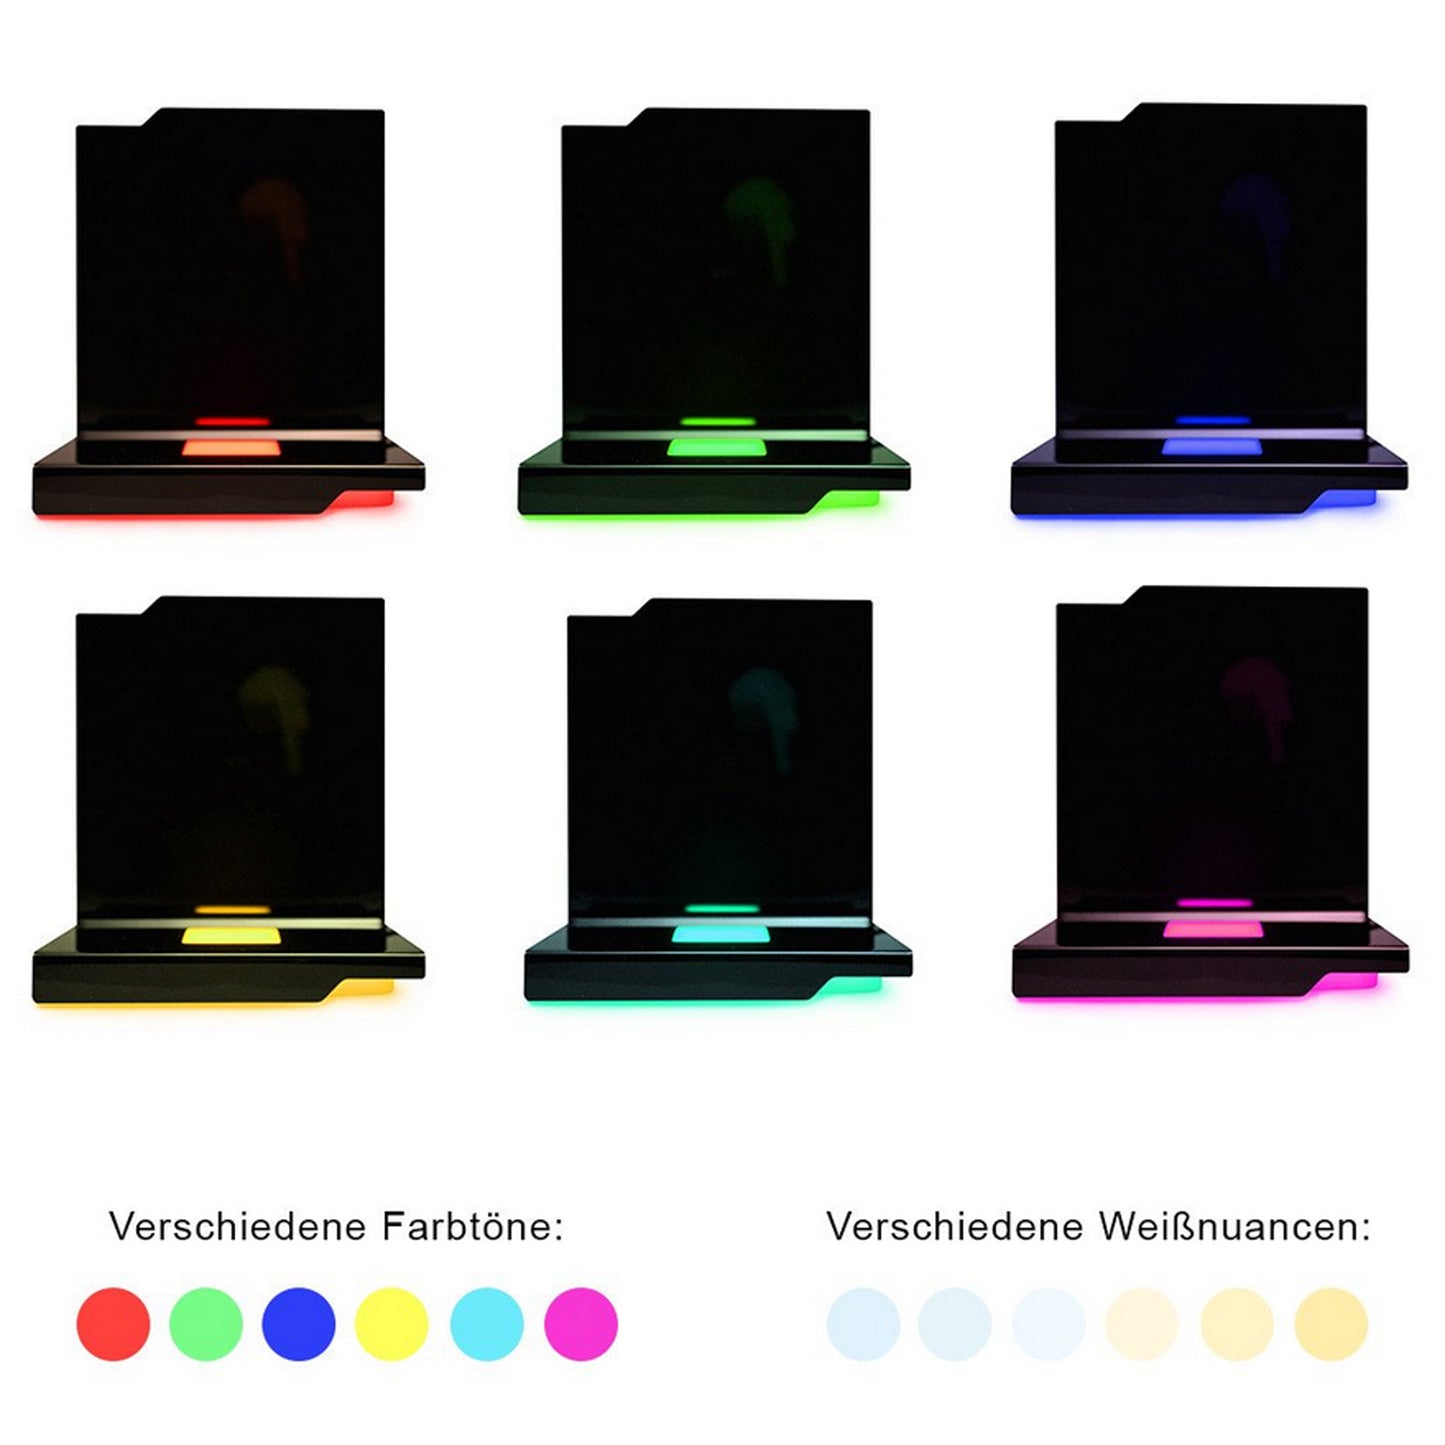 3D Fotos in Glas - Eisberg M mit Maggiore Beleuchtungselement